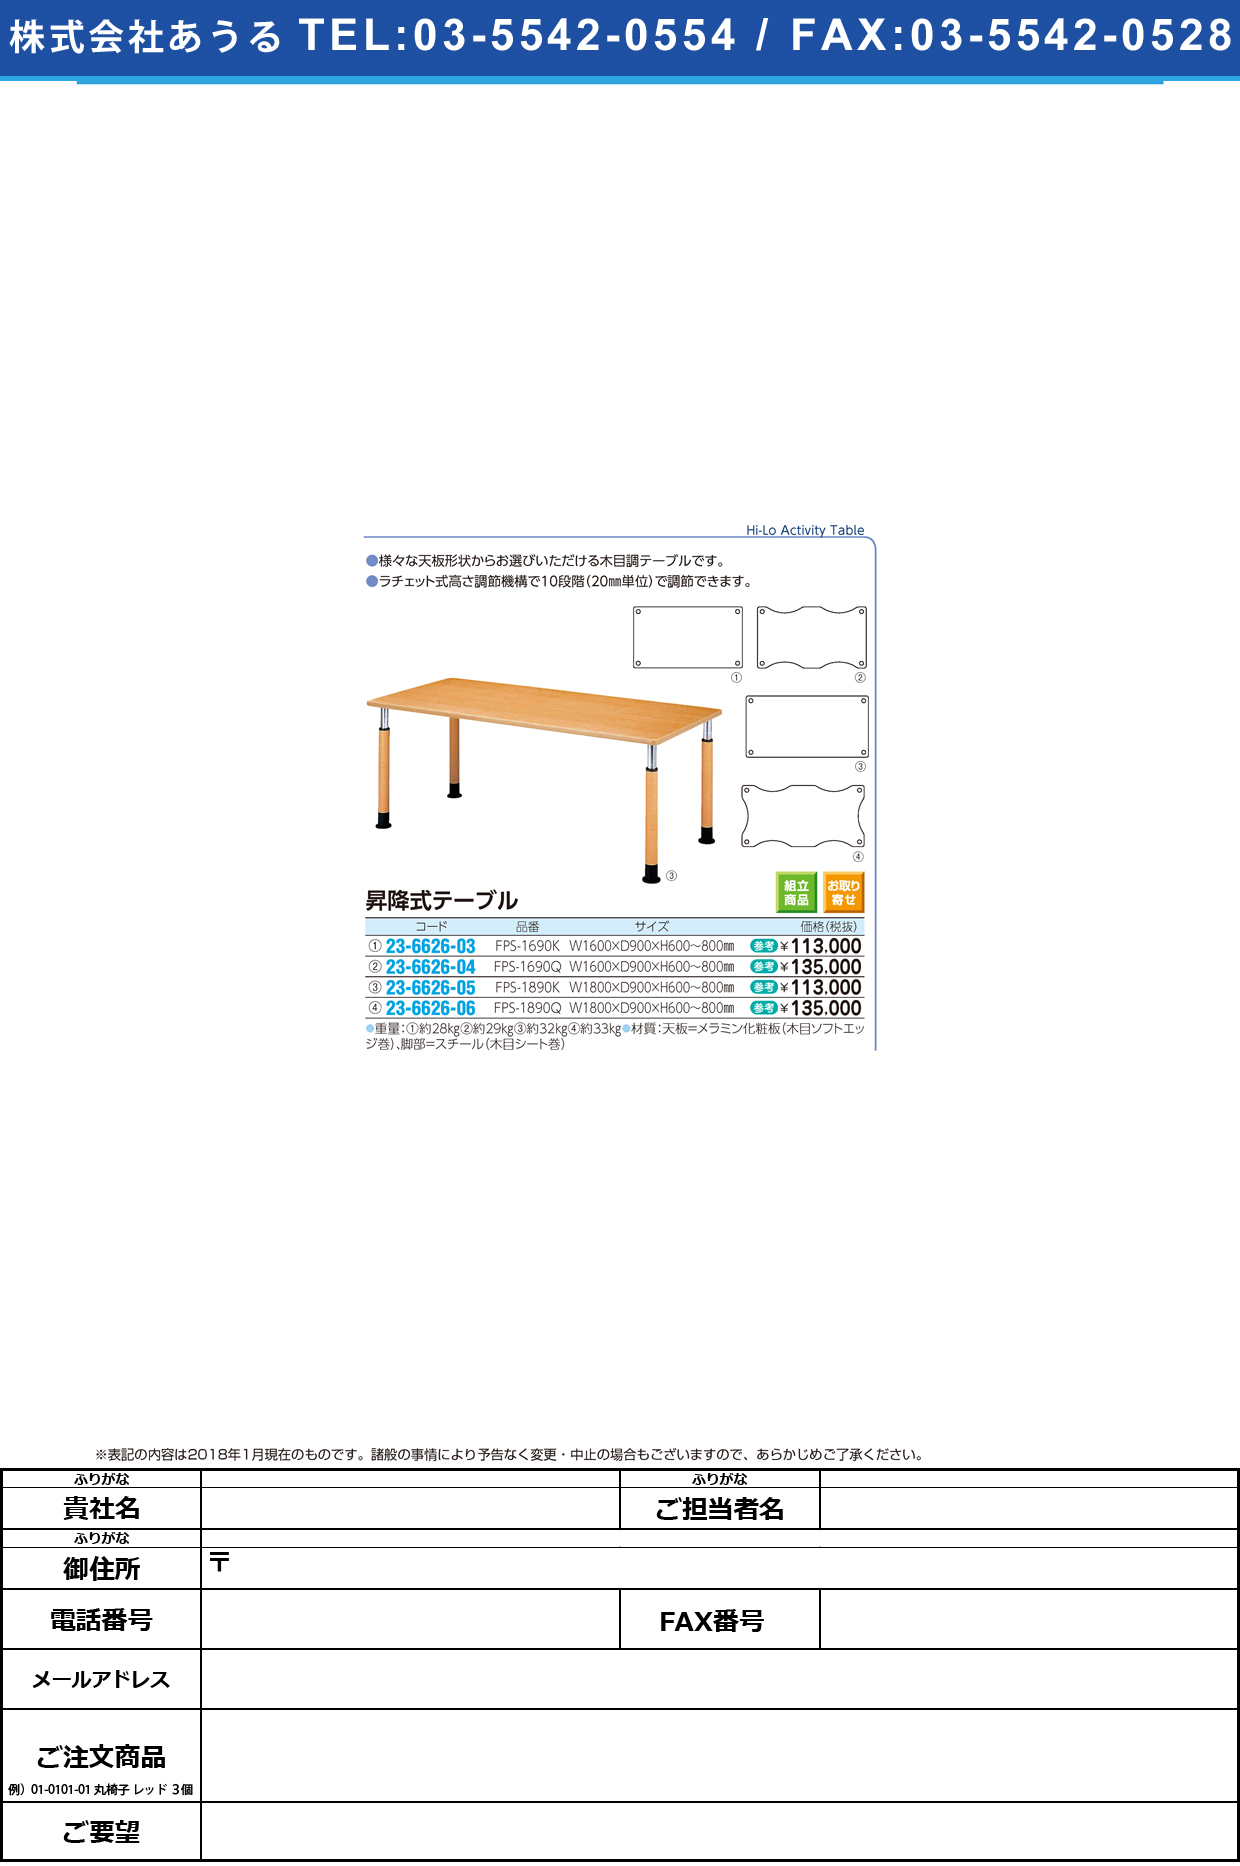 (23-6626-06)昇降式テーブル FPS-1890Q(W180XD90CM ｼｮｳｺｳｼｷﾃｰﾌﾞﾙ【1台単位】【2018年カタログ商品】